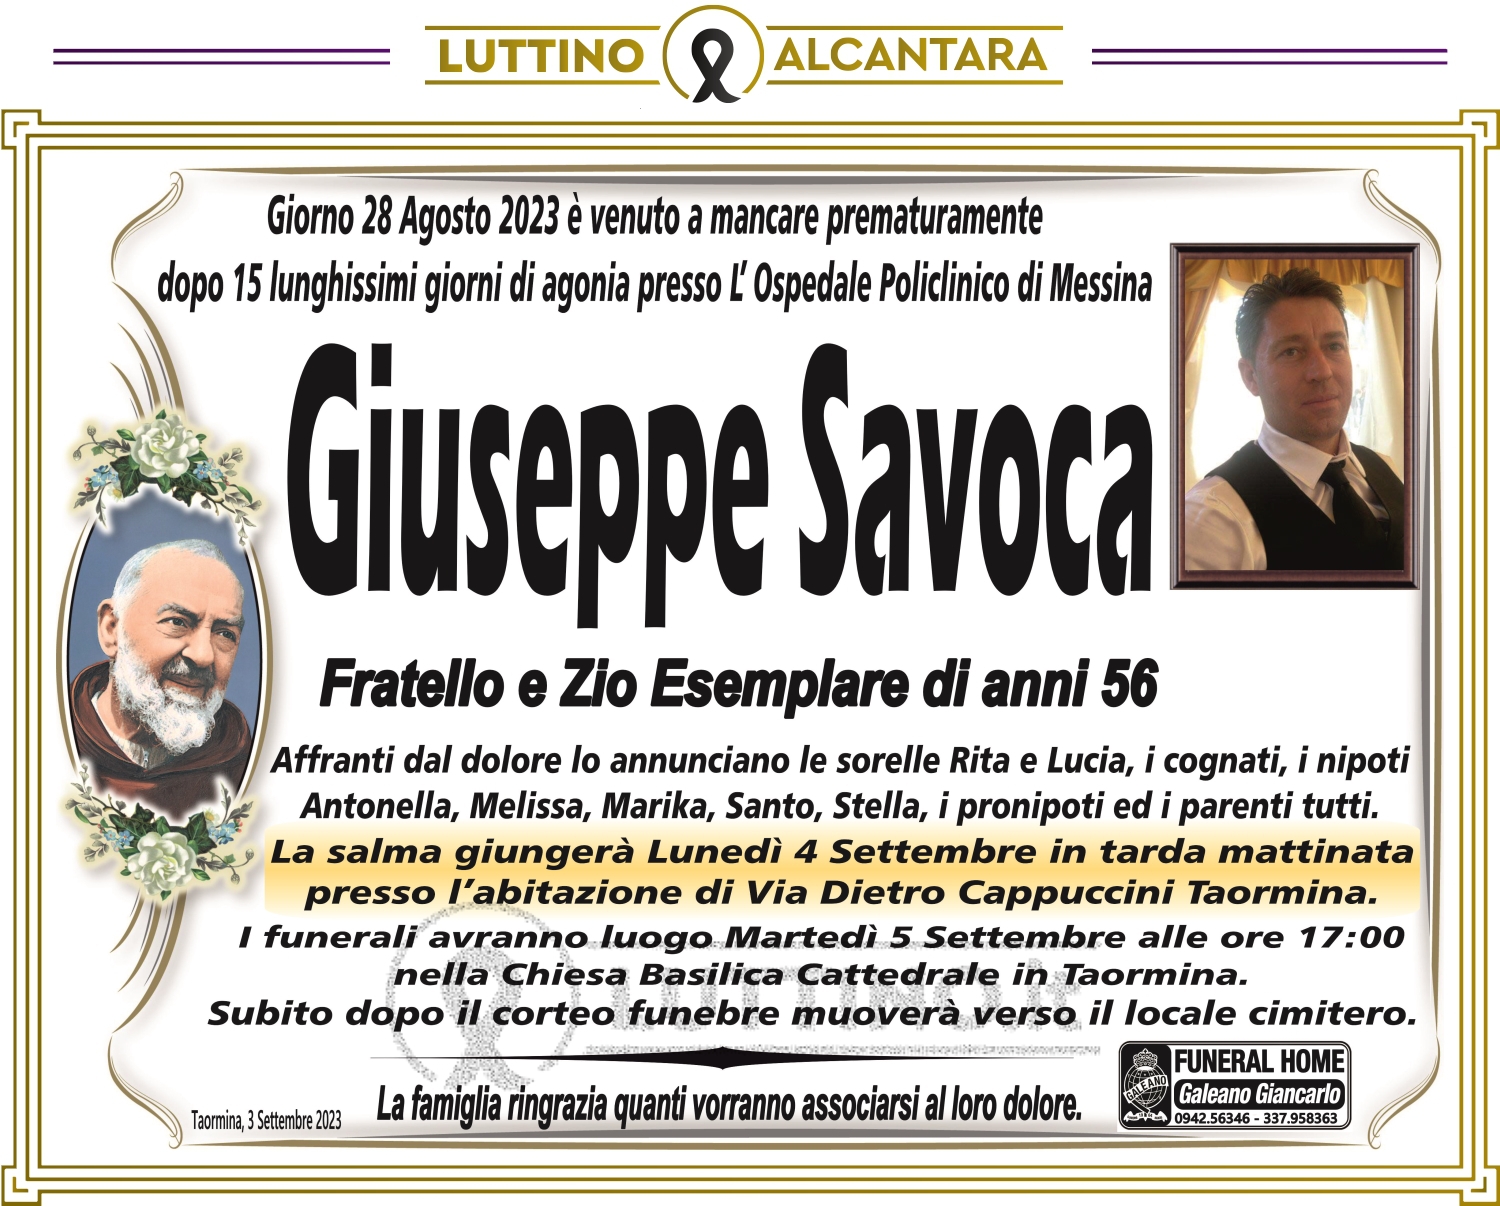 Giuseppe Savoca